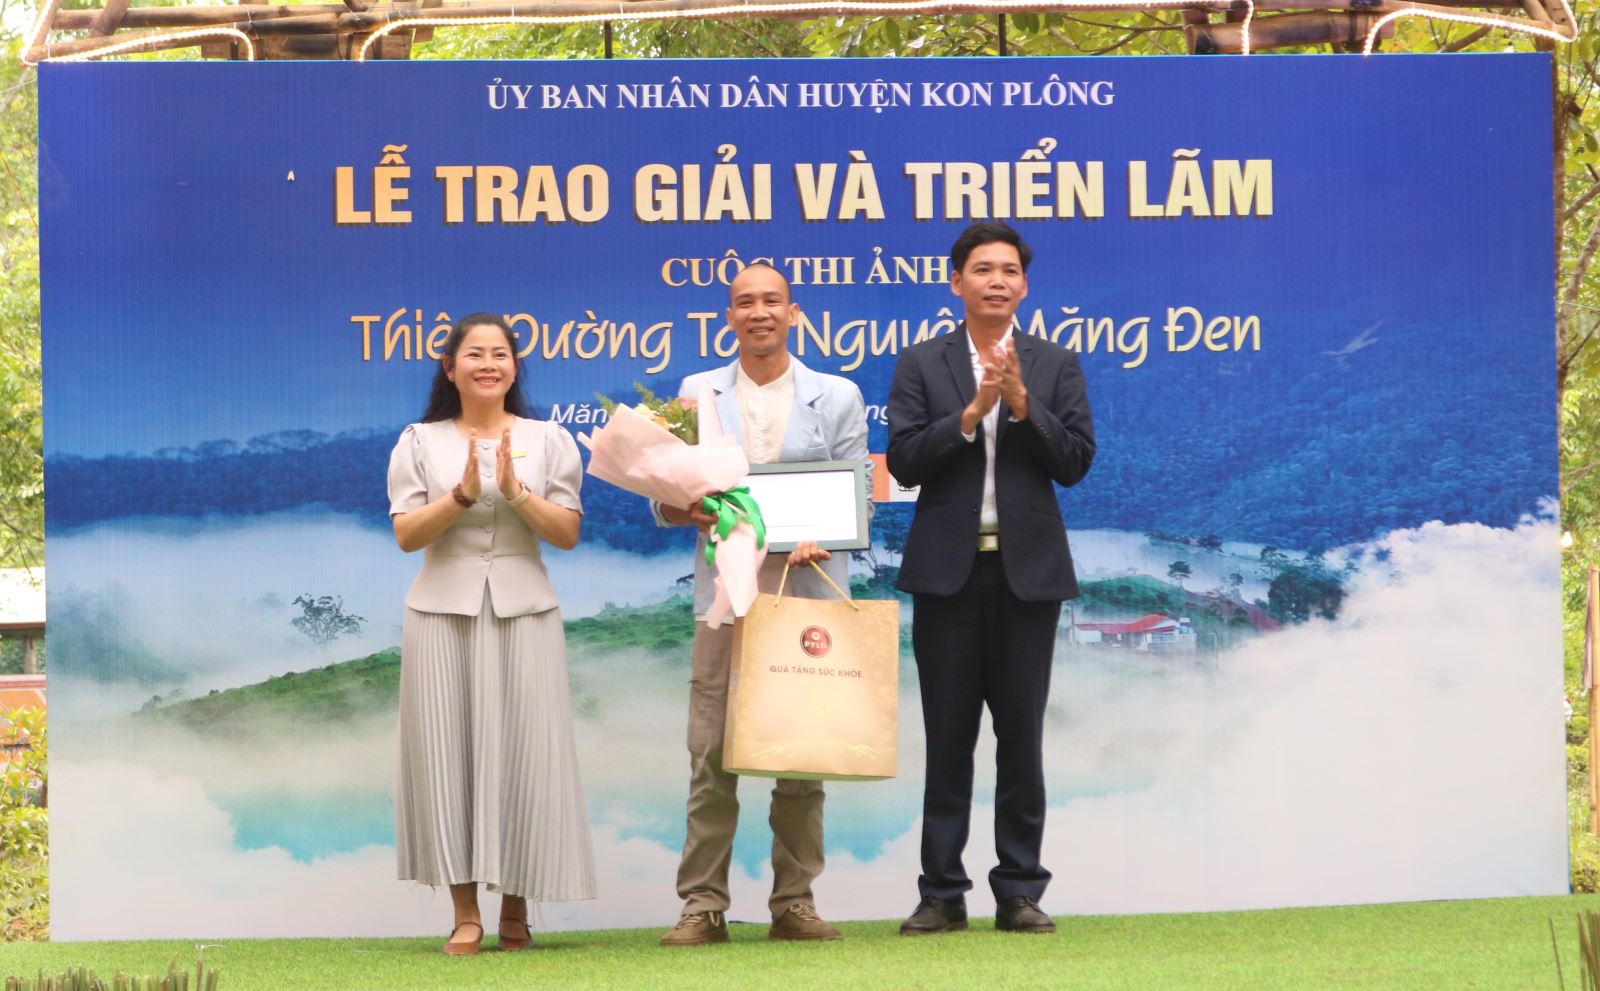 The award ceremony and exhibition of the photo contest "Thiên đường Tây Nguyên - Măng Đen"